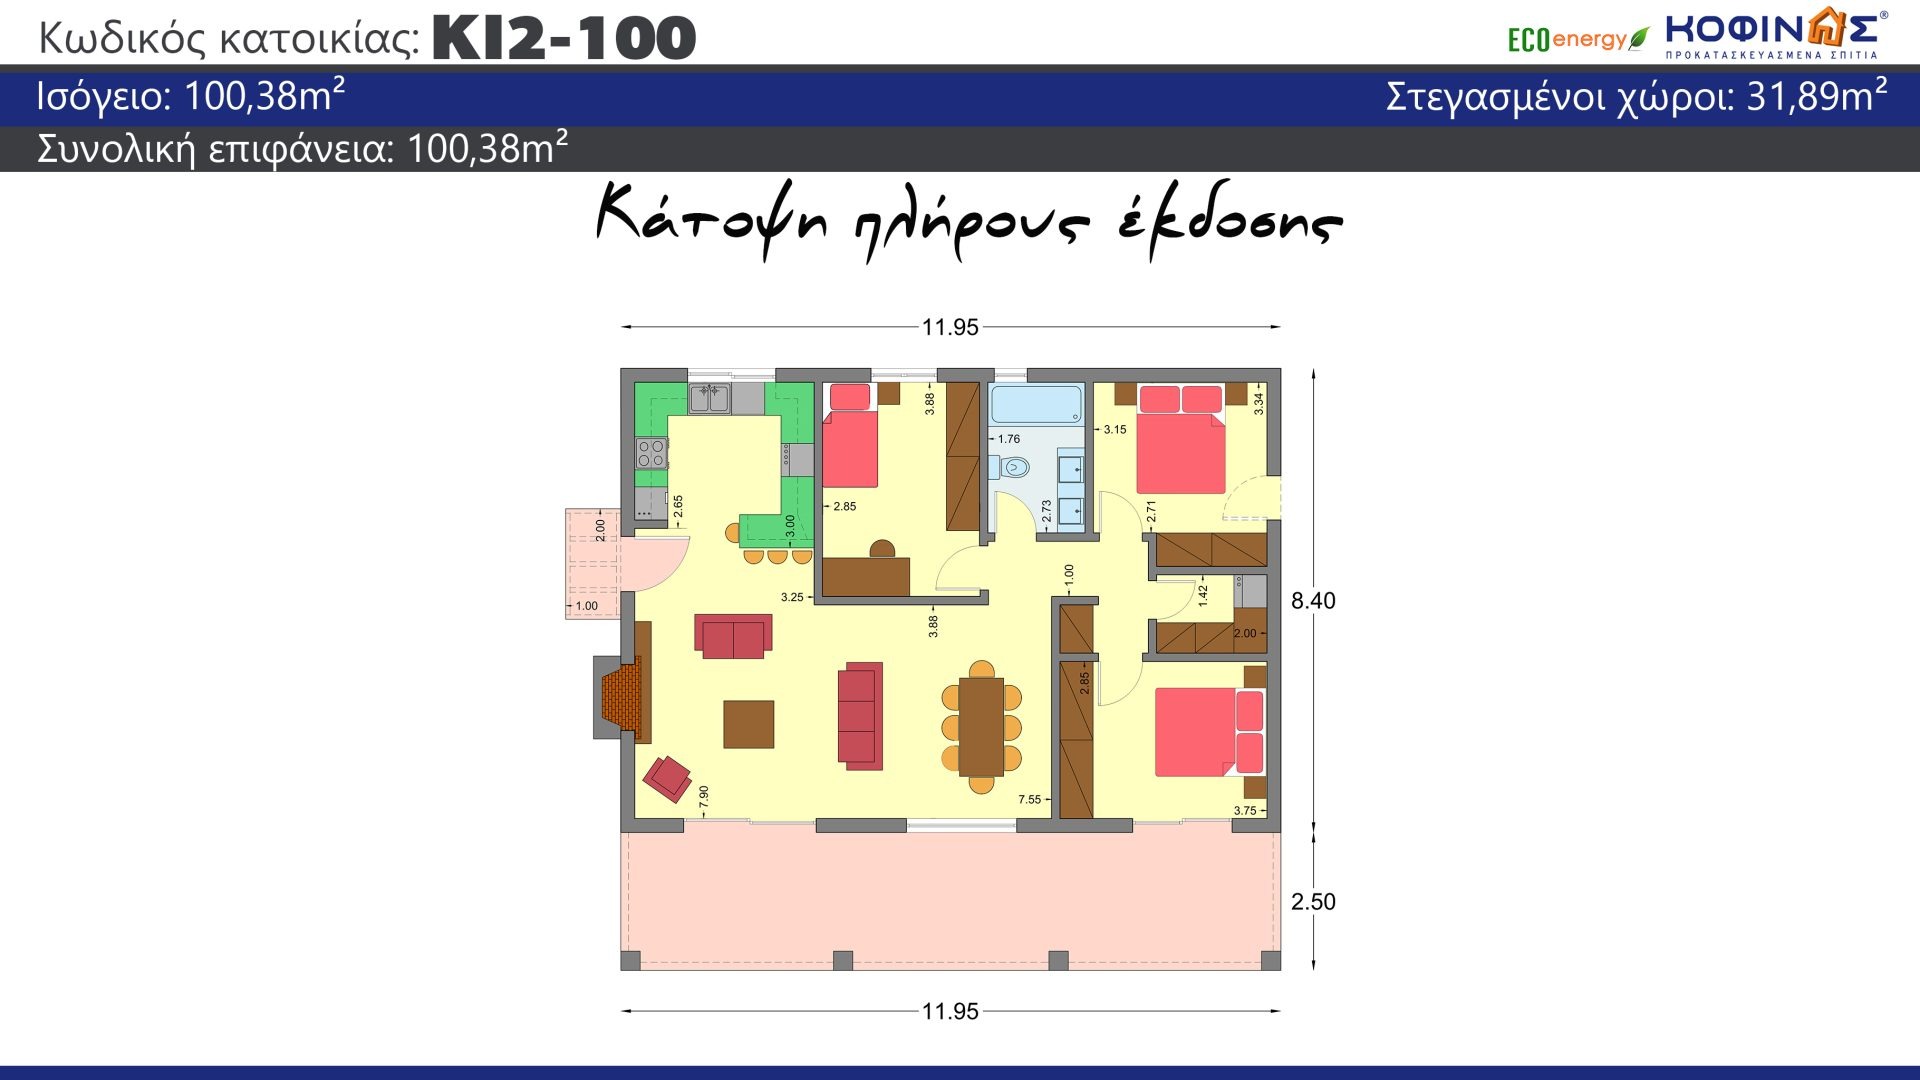 Ισόγεια Κατοικία KI2-100 συνολικής επιφάνειας 100,38τ.μ., στεγασμένοι χώροι 31,89τ.μ.